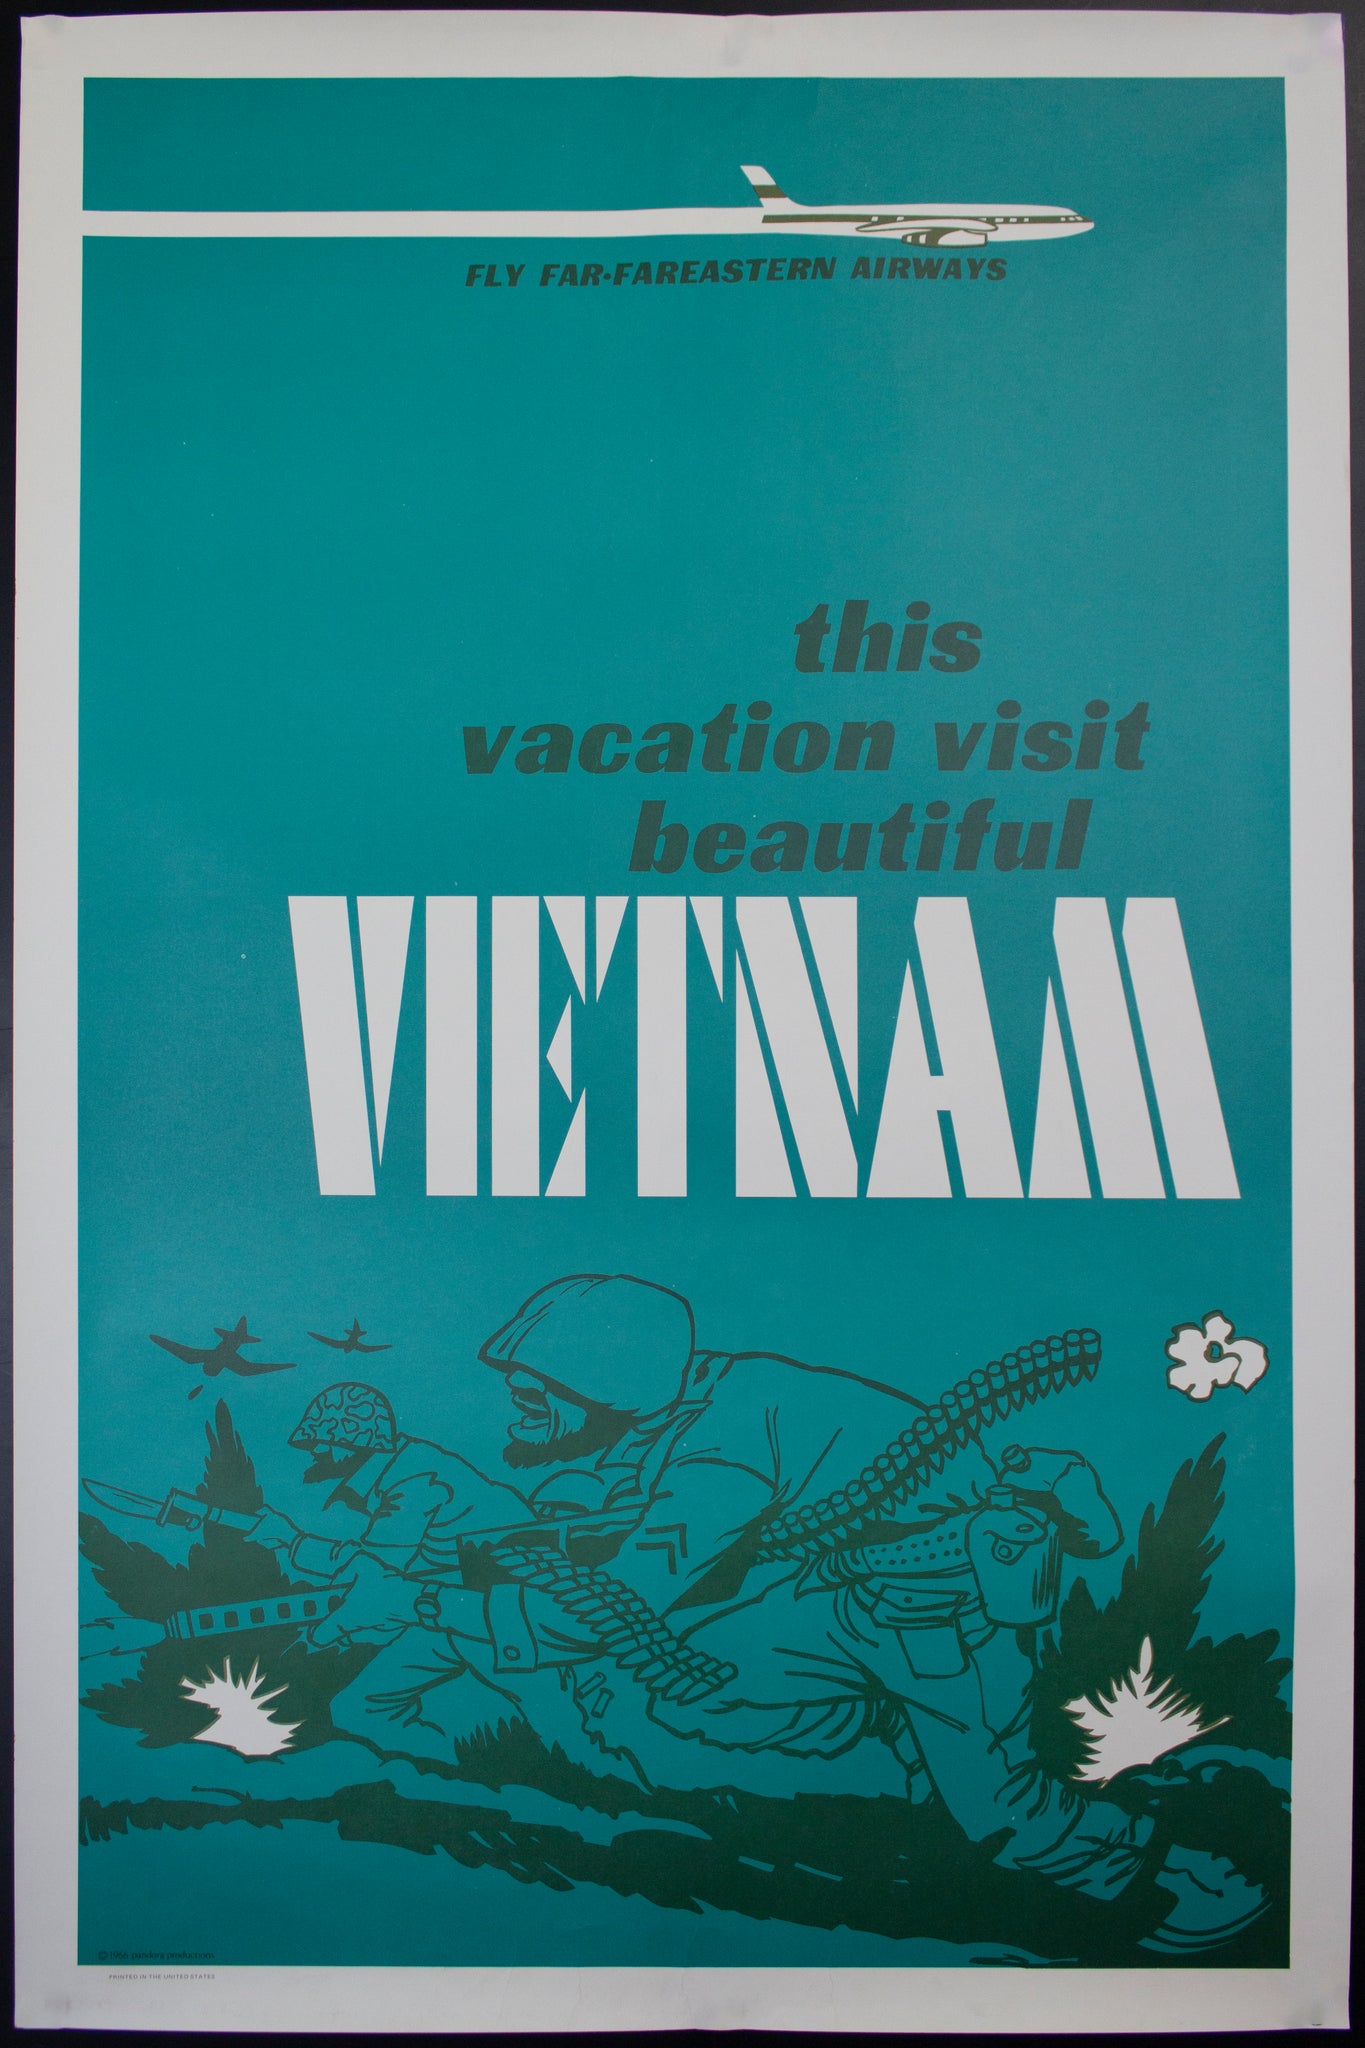 1966 Fly Far-Fareastern Airways Vacation in Vietnam Anti-War